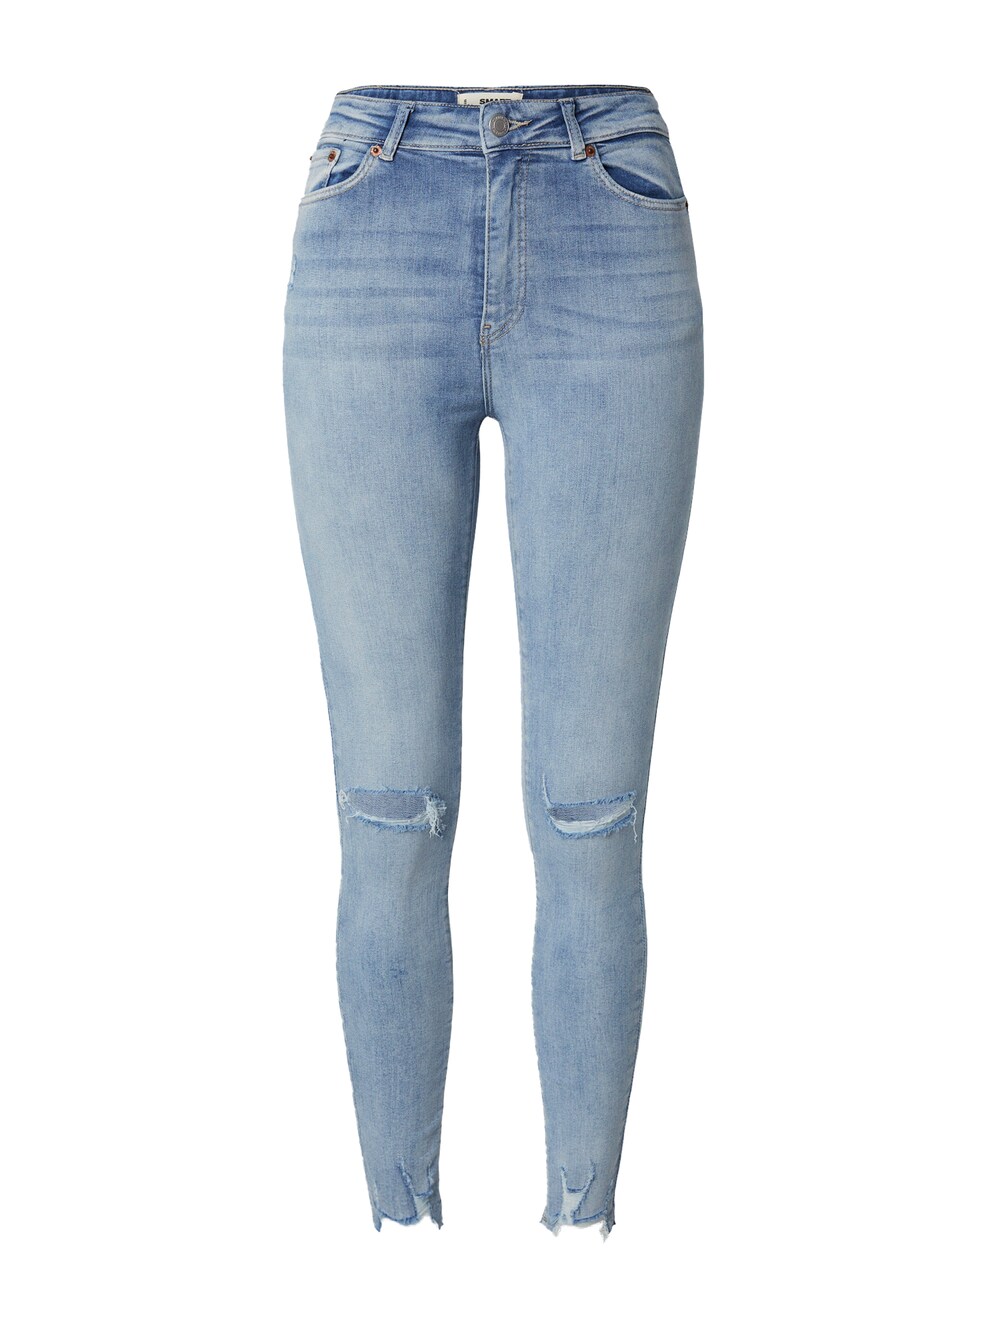 Узкие джинсы Tally Weijl SPADESMART2, синий джинсы tally weijl зауженные 40 размер новые